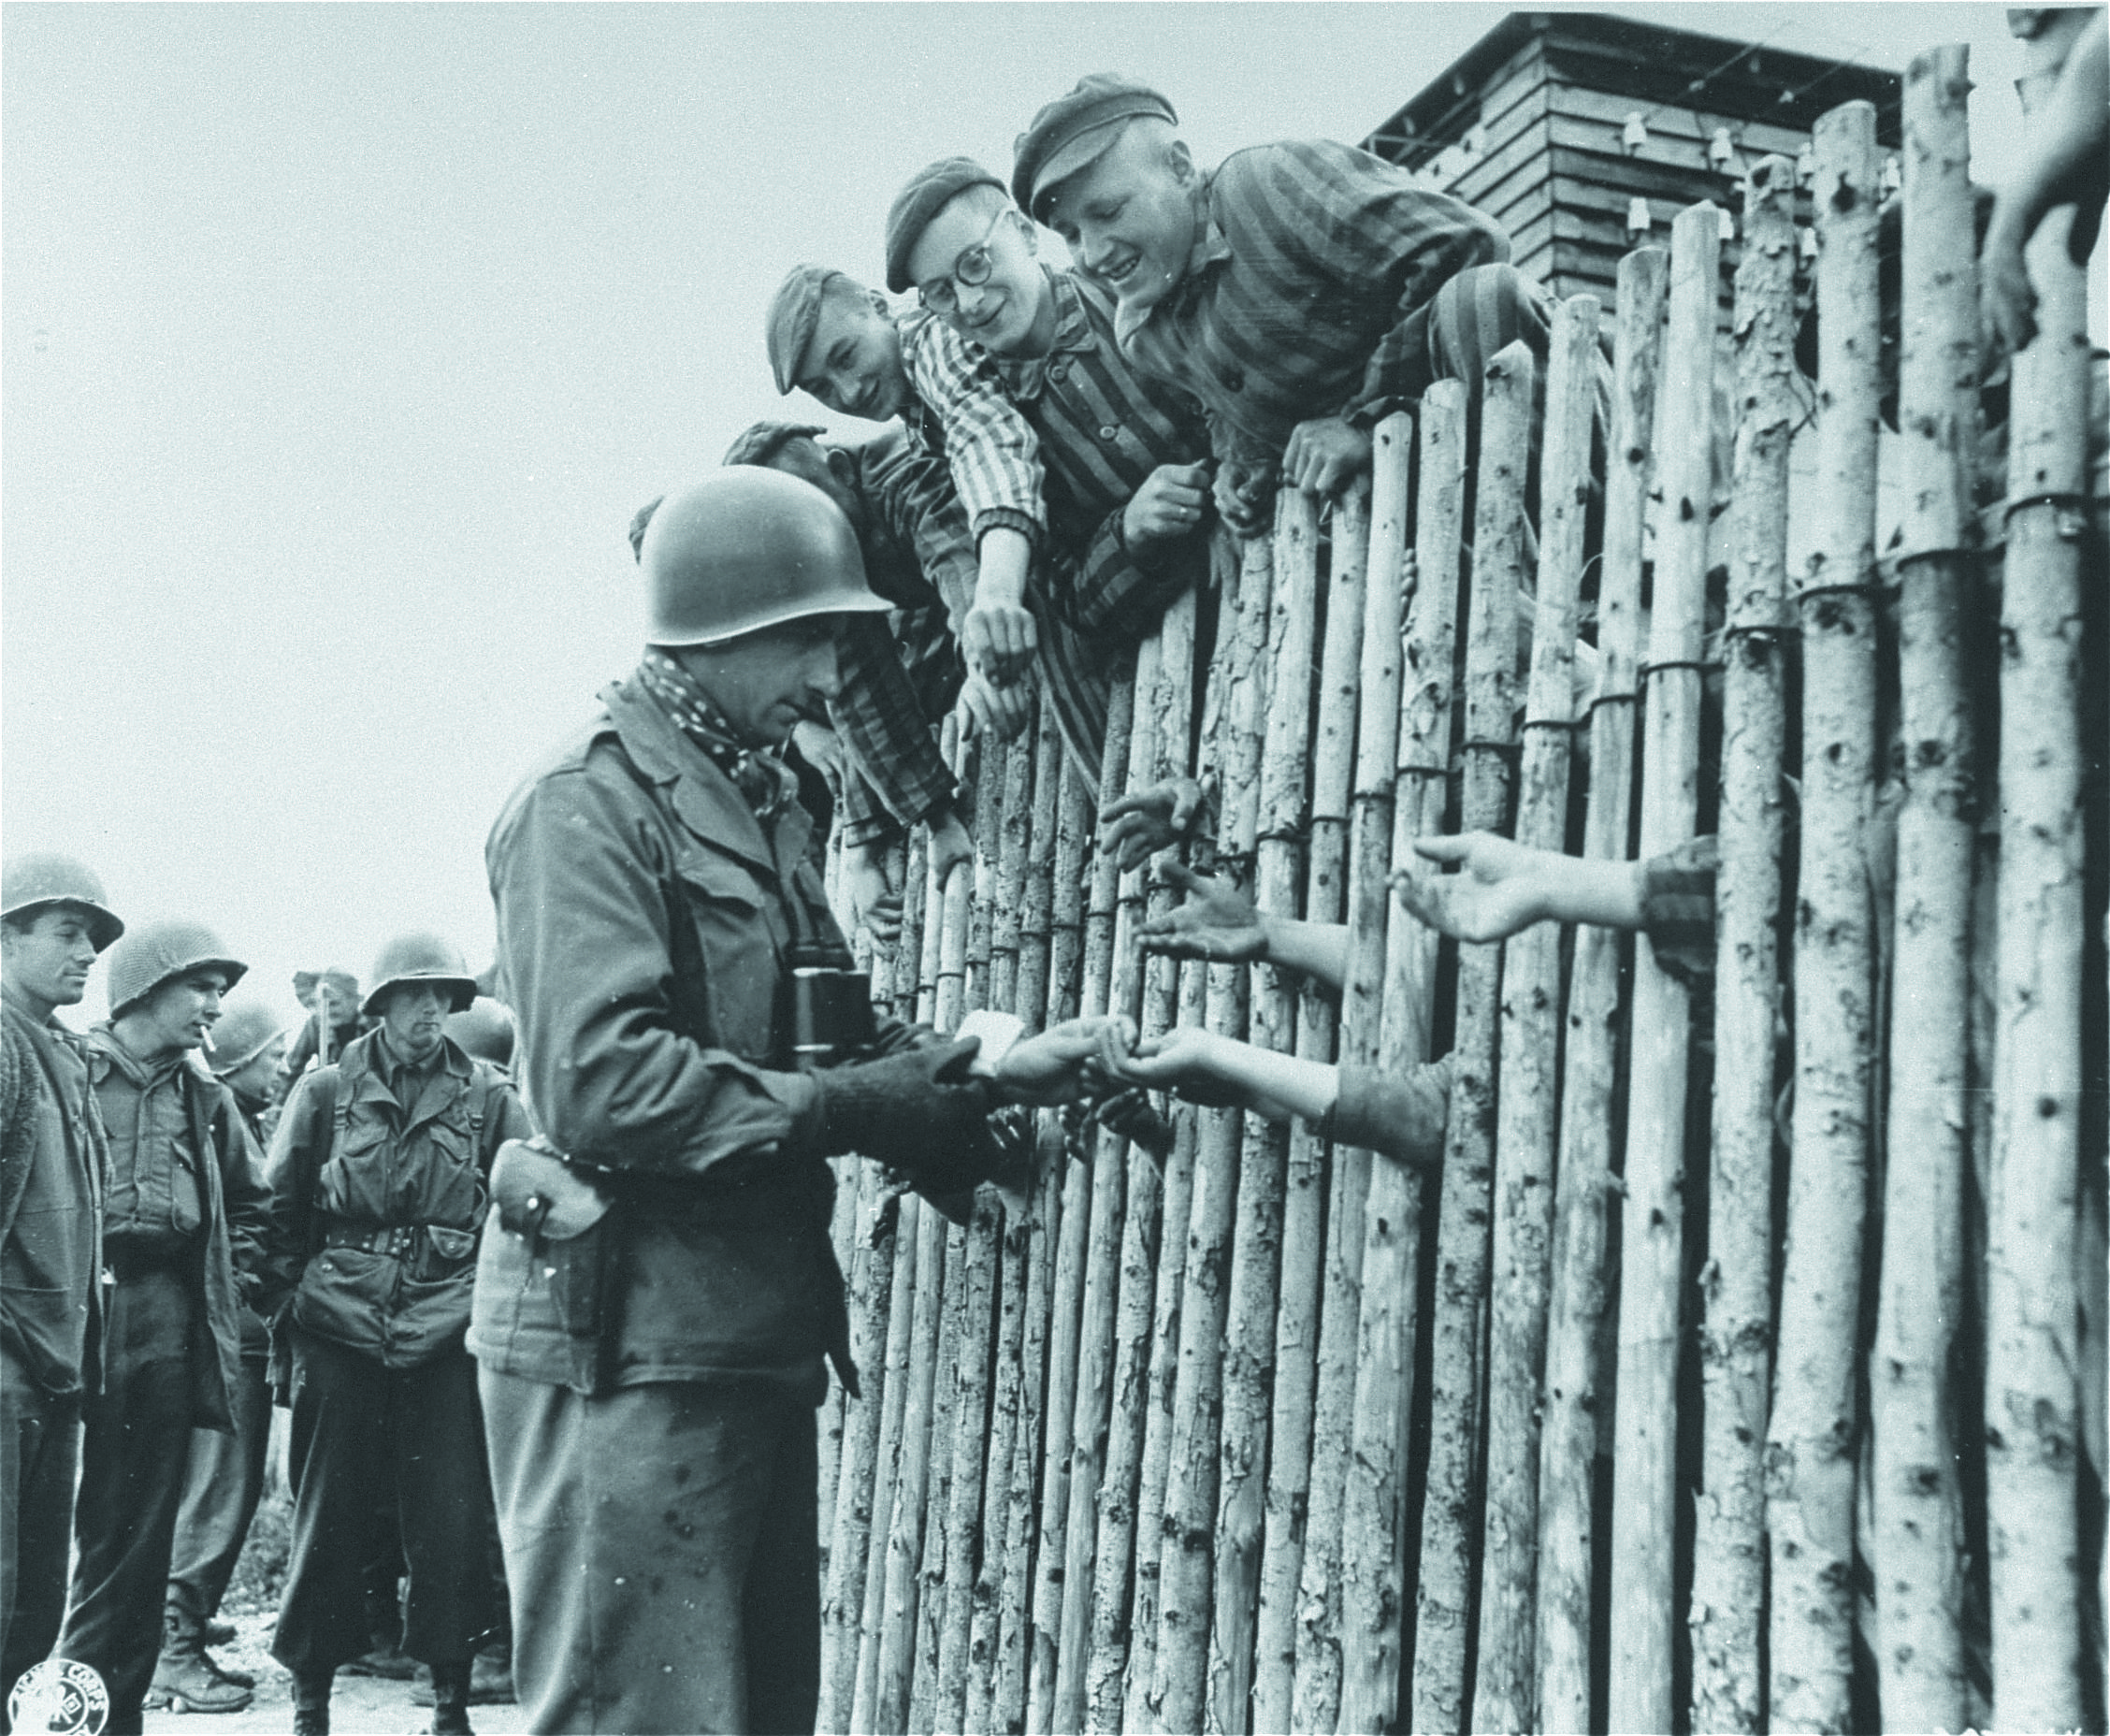 Allach, sottocampo di Dachau, 30 aprile 1945: ex-prigionieri ringraziano i liberatori americani della VII armata